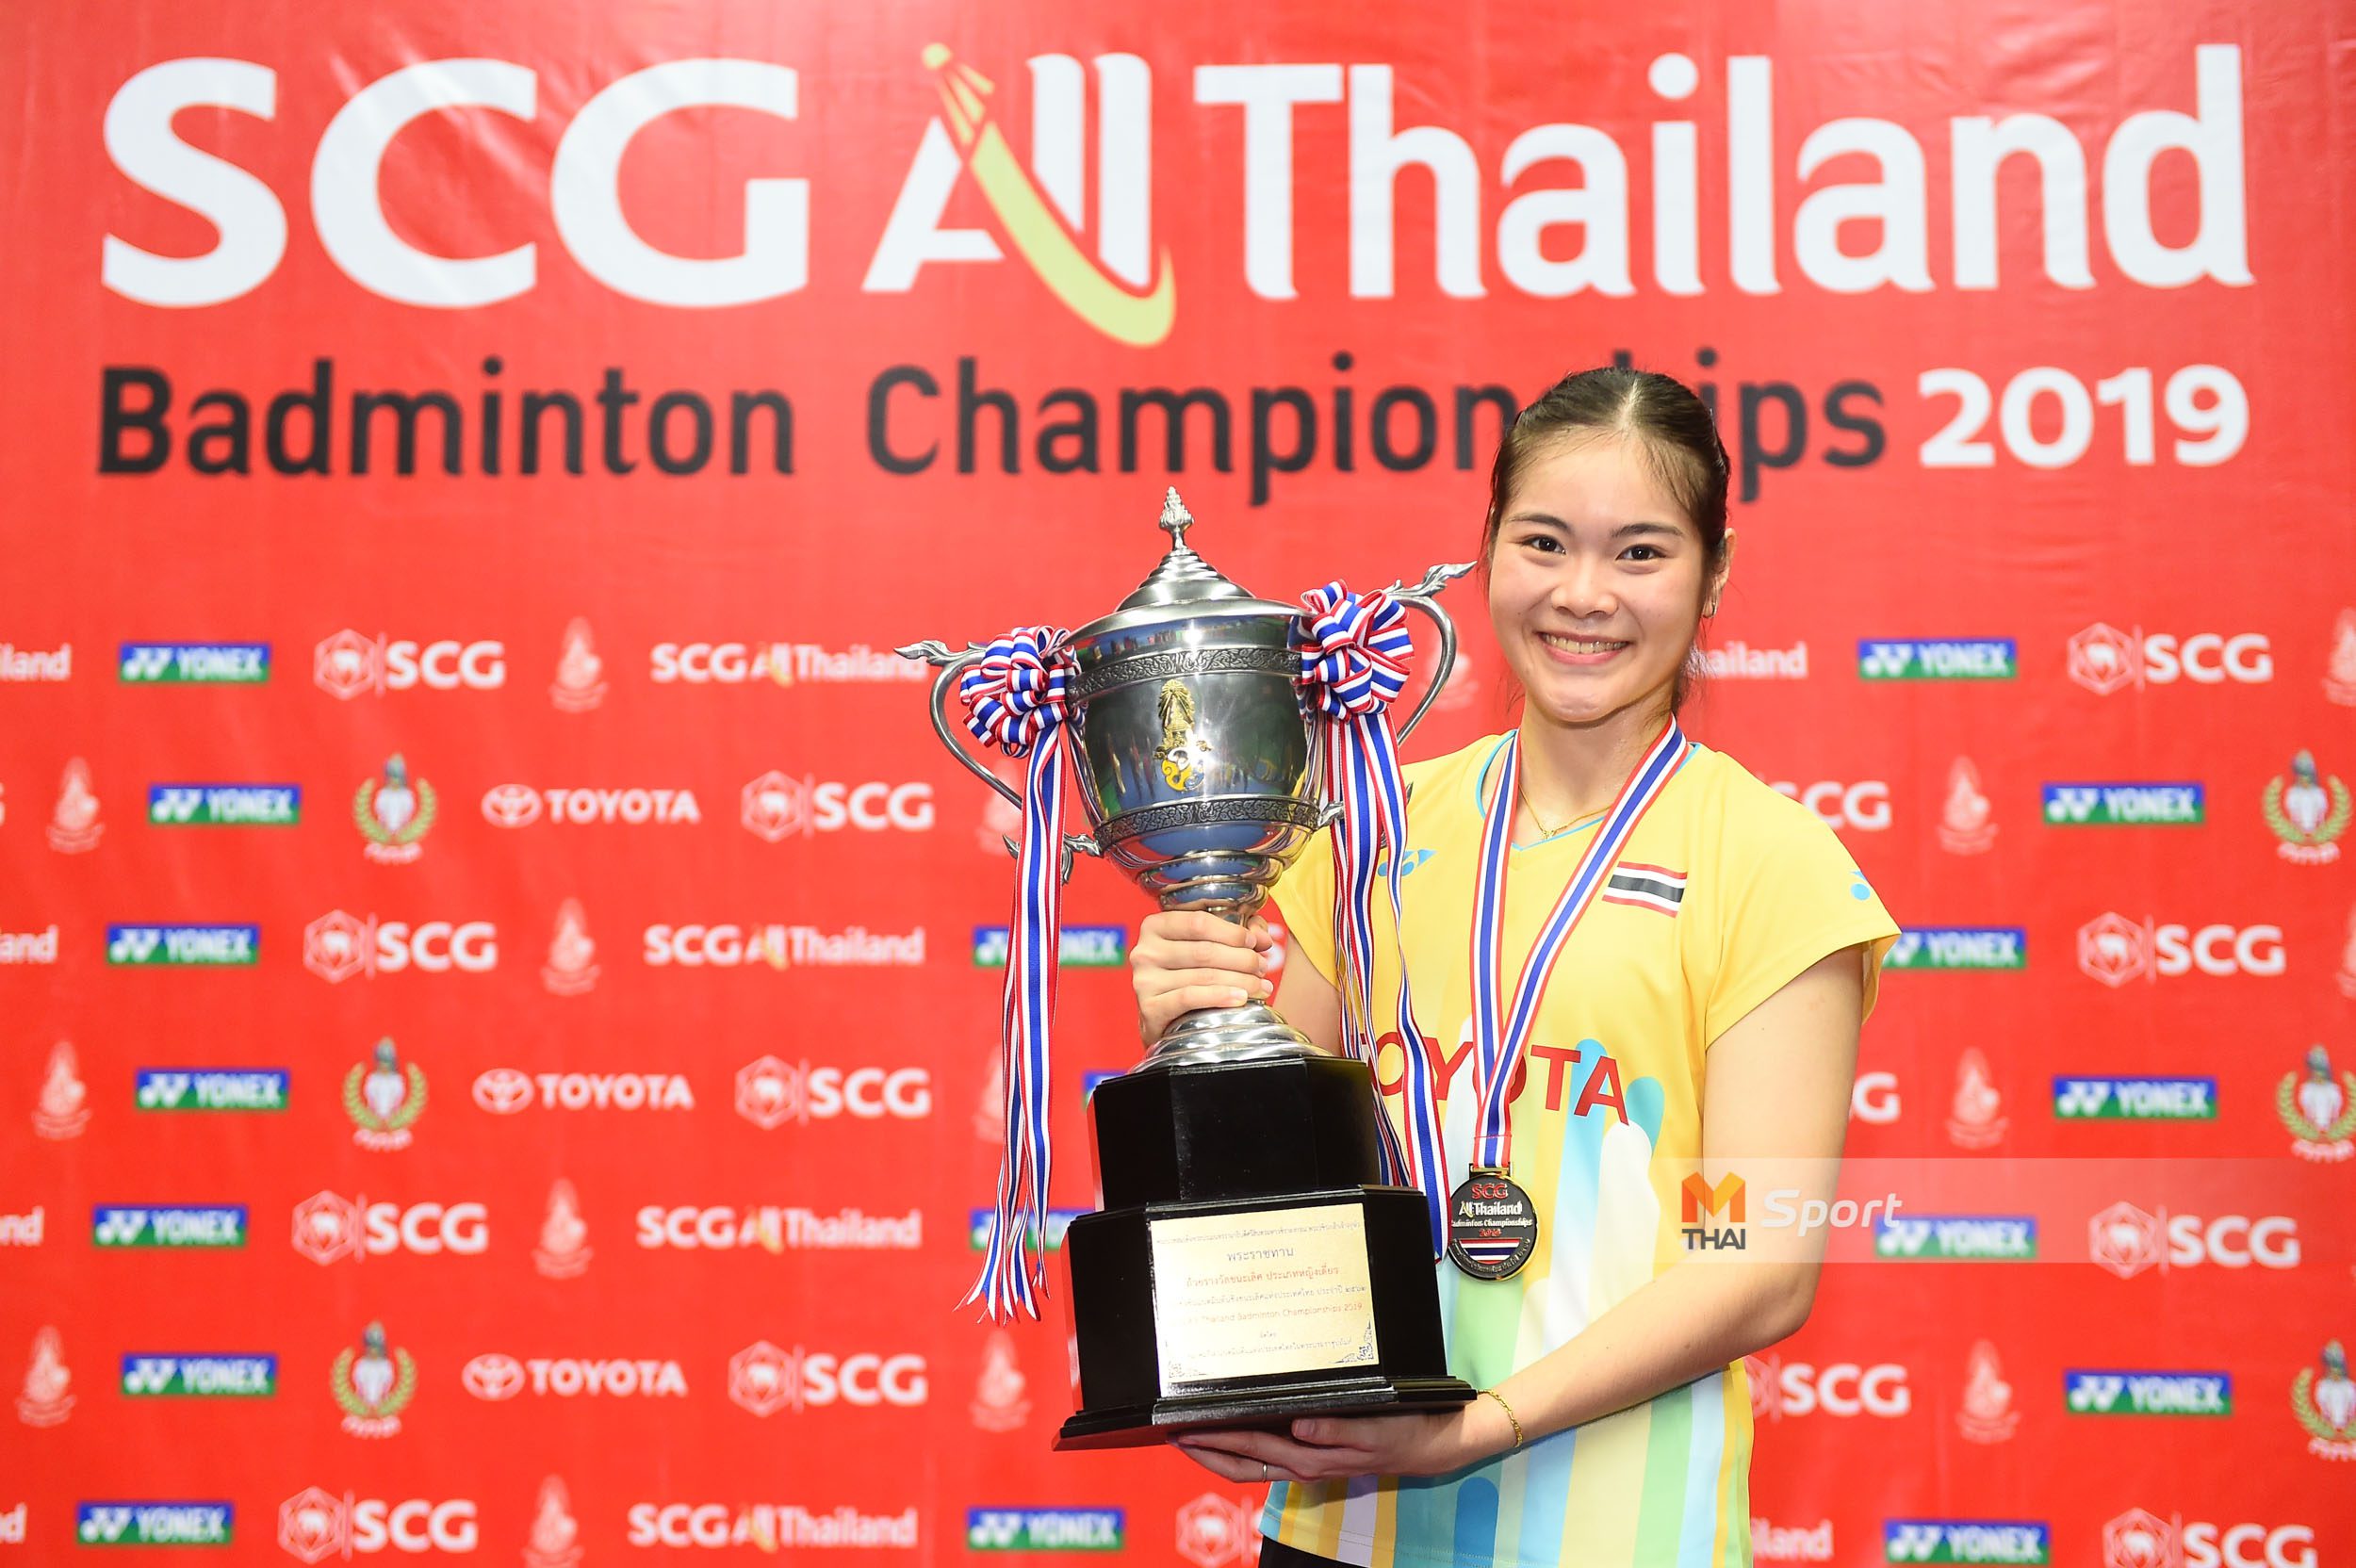 ครีม, โอ็ต มาตามนัด ตบคว้าแชมป์ เอสซีจี ออลไทยแลนด์ แบดมินตัน แชมเปี้ยนชิพ 2019